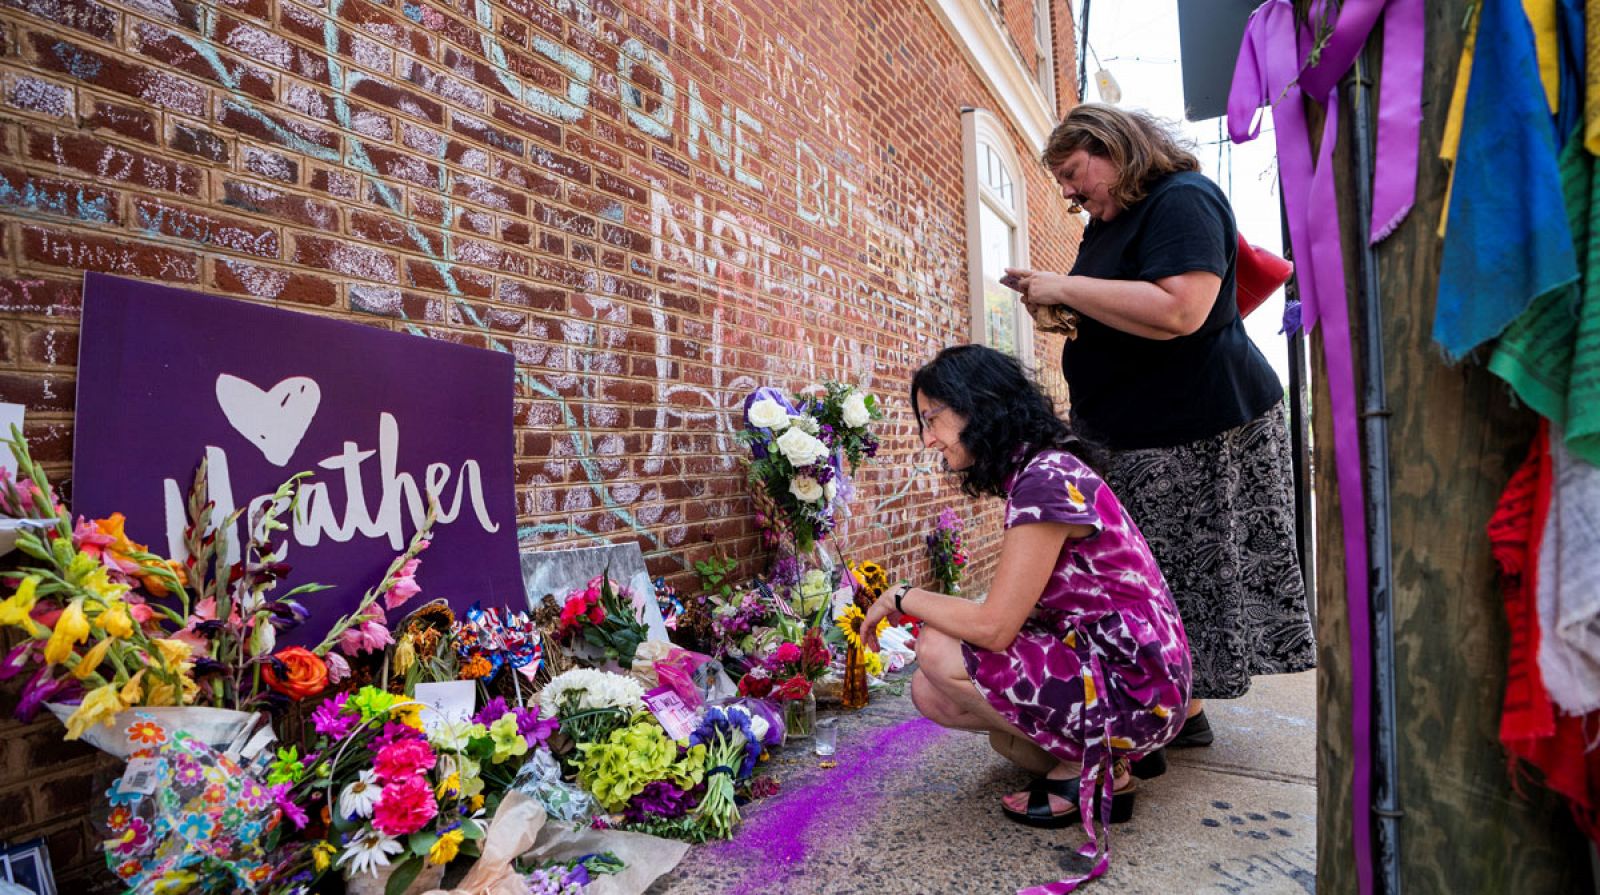 Varias mujeres colcan flores en el memorial de Heather Heyer, la mujer atropellada por un supremacista en una contraprotesta en 2017, en Charlottesville, Virginia (Estados Unidos).